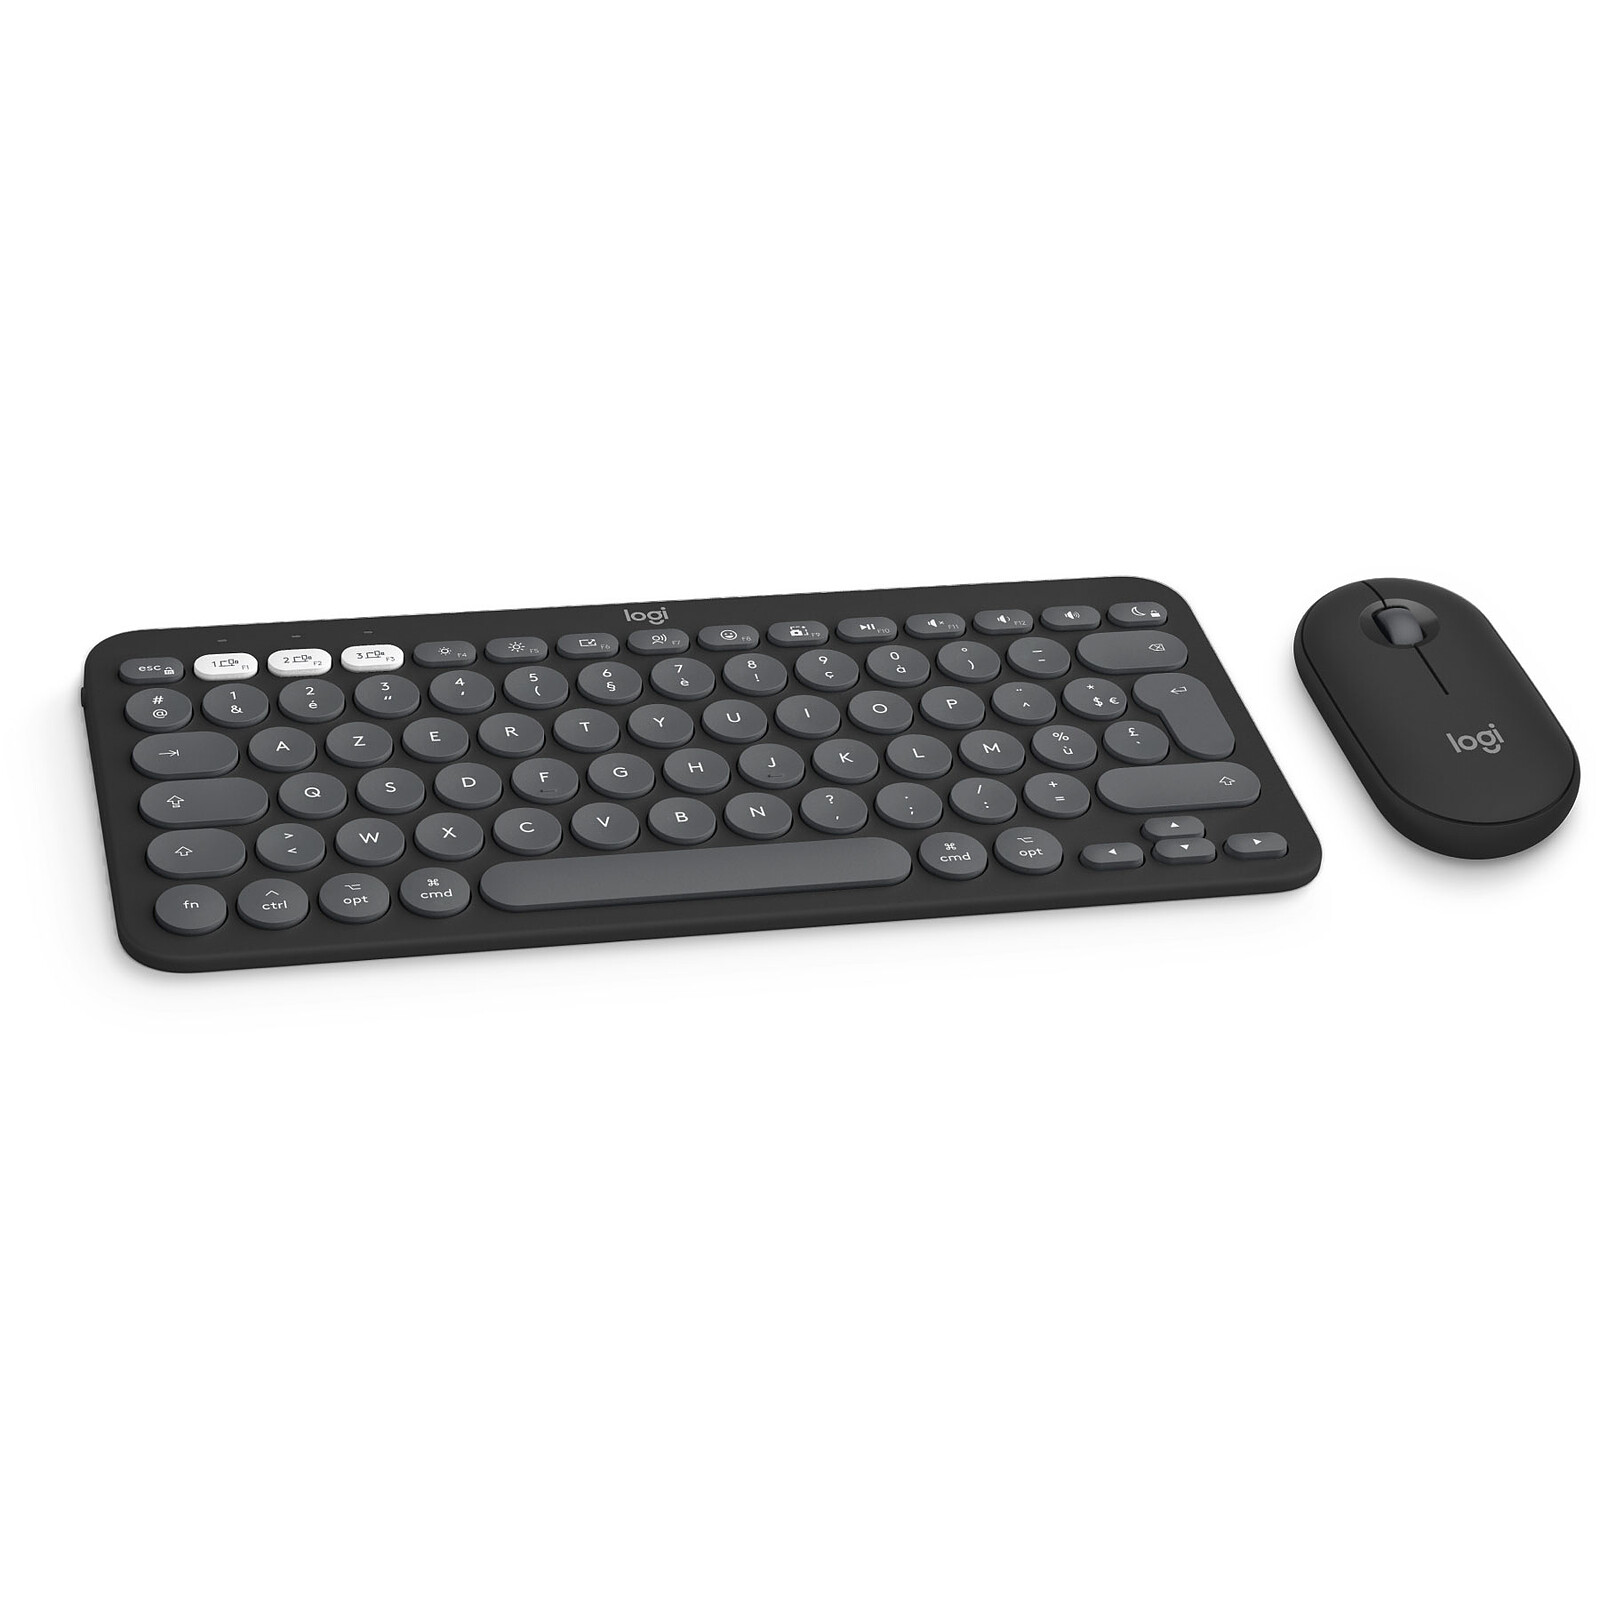 Microsoft Wired Keyboard 600 Noir - Clavier PC - Garantie 3 ans LDLC